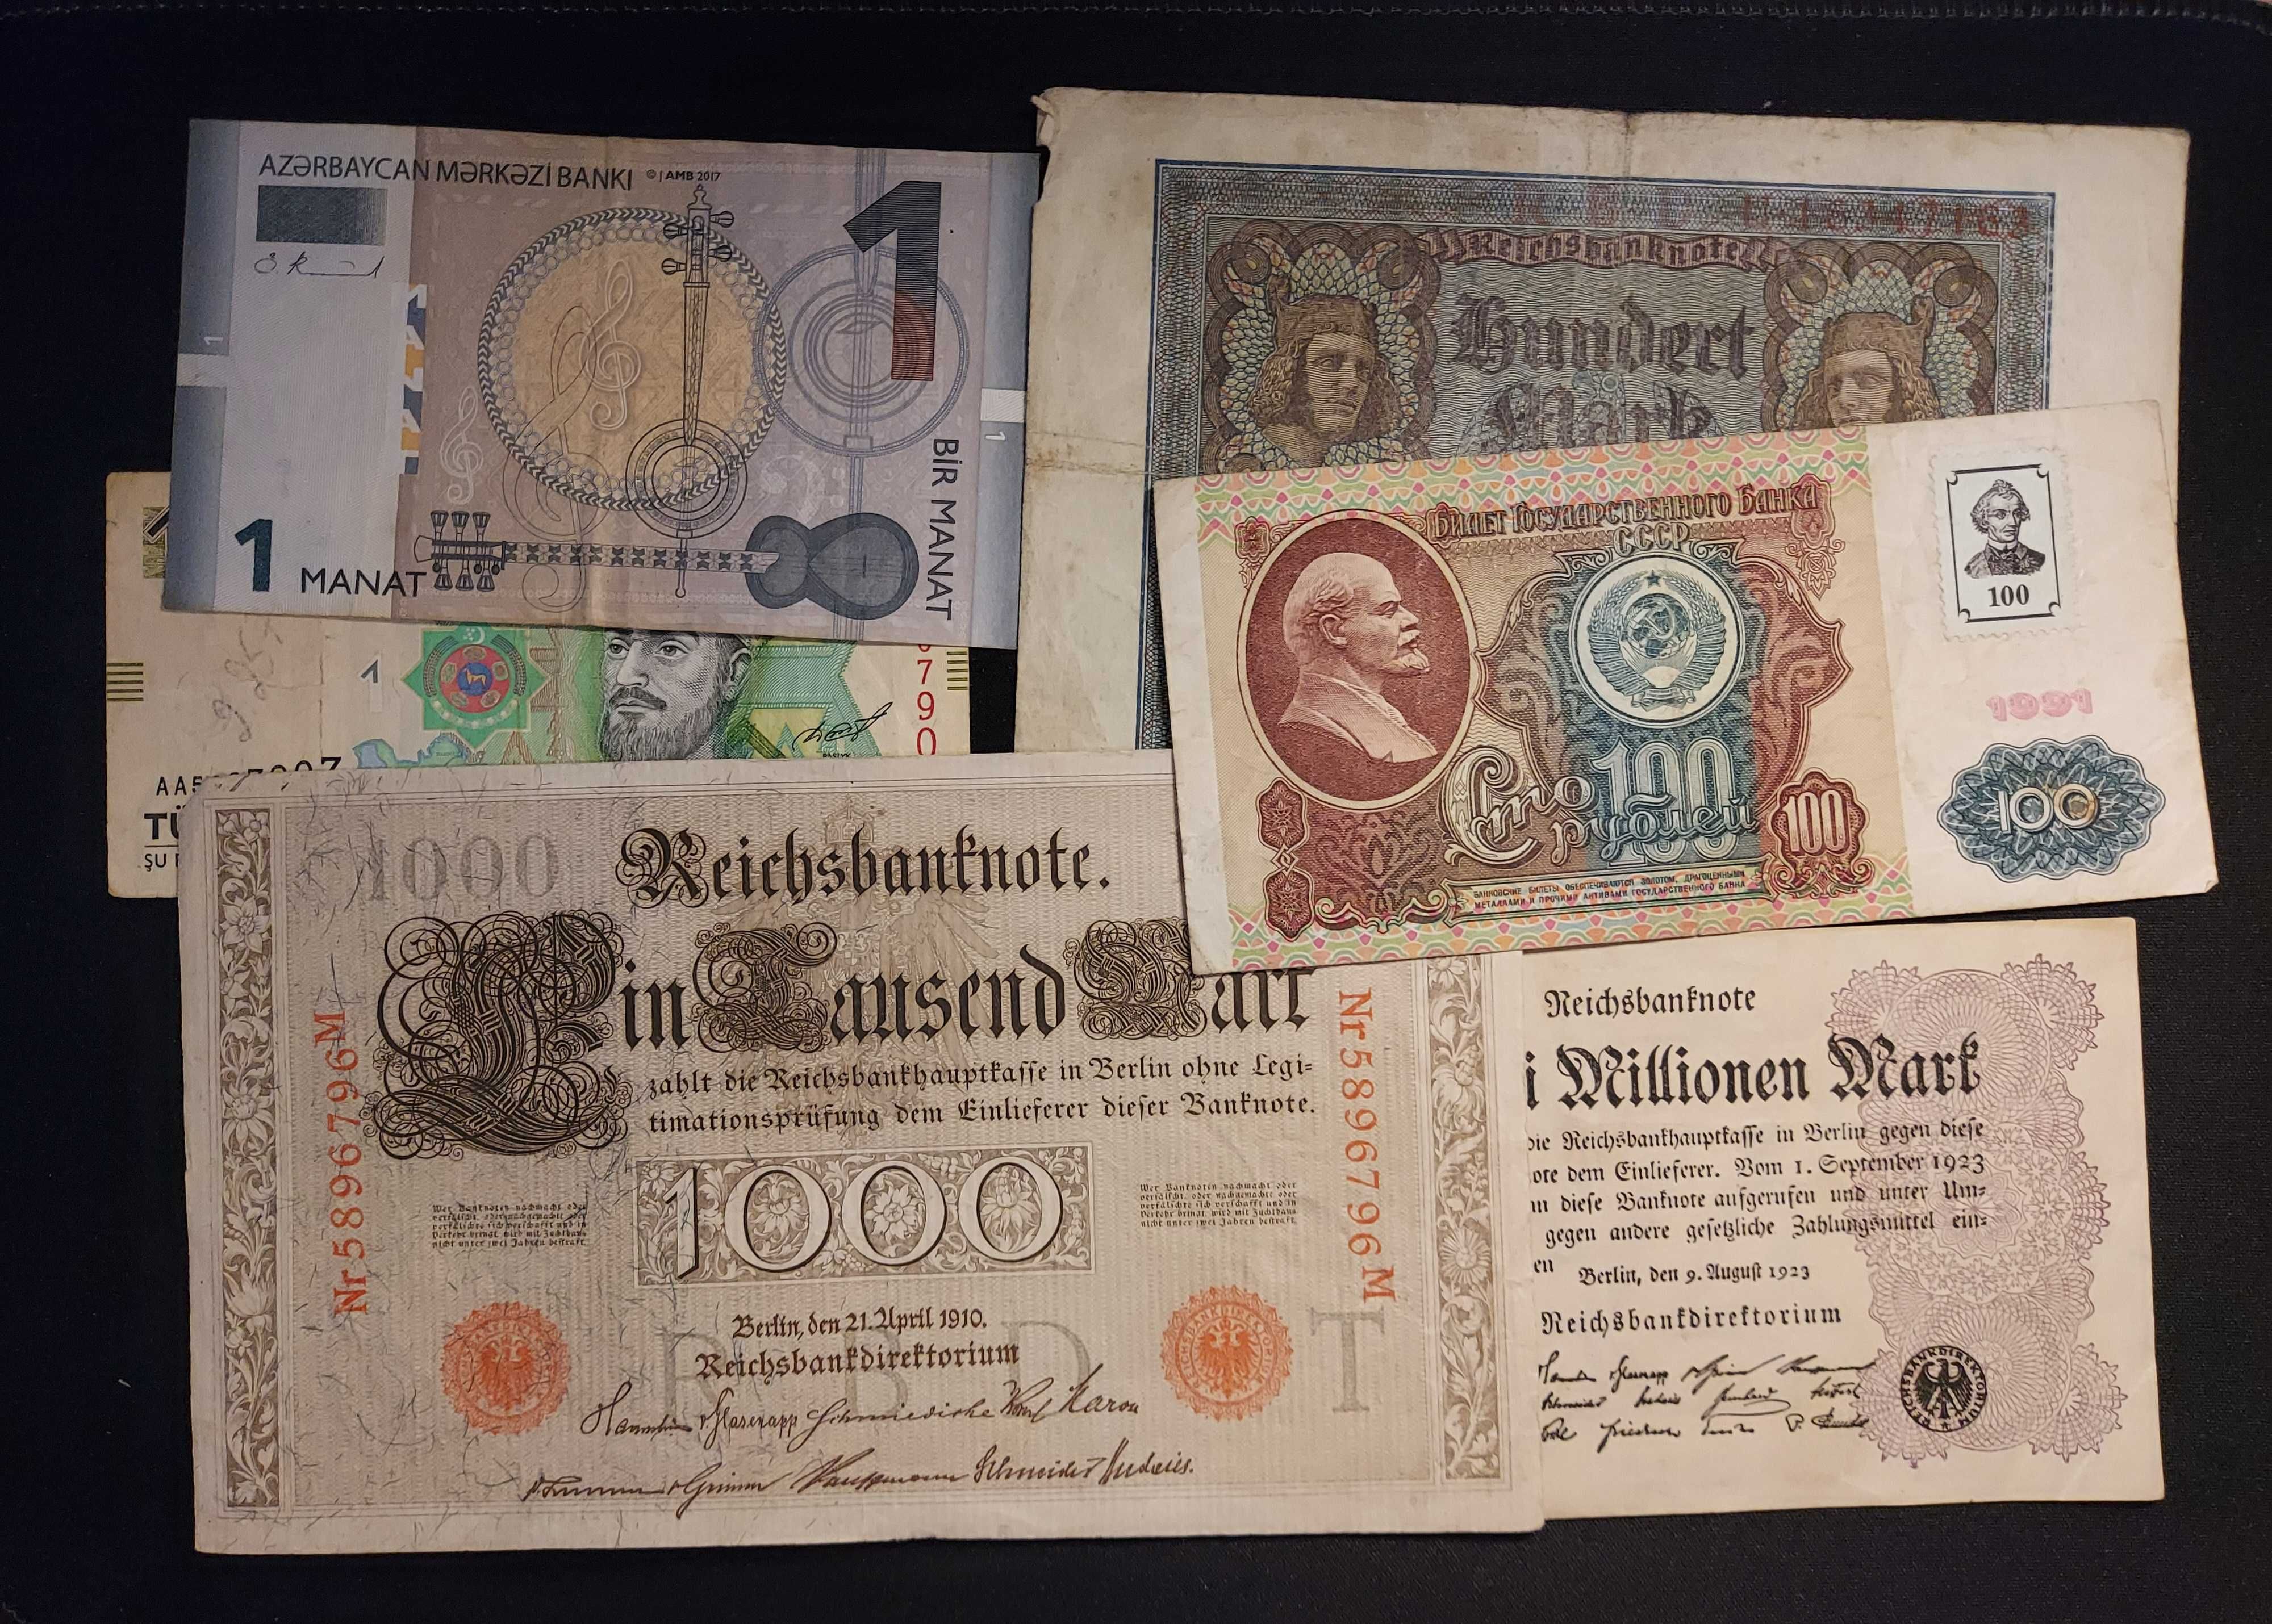 Набір банкнот різних країн